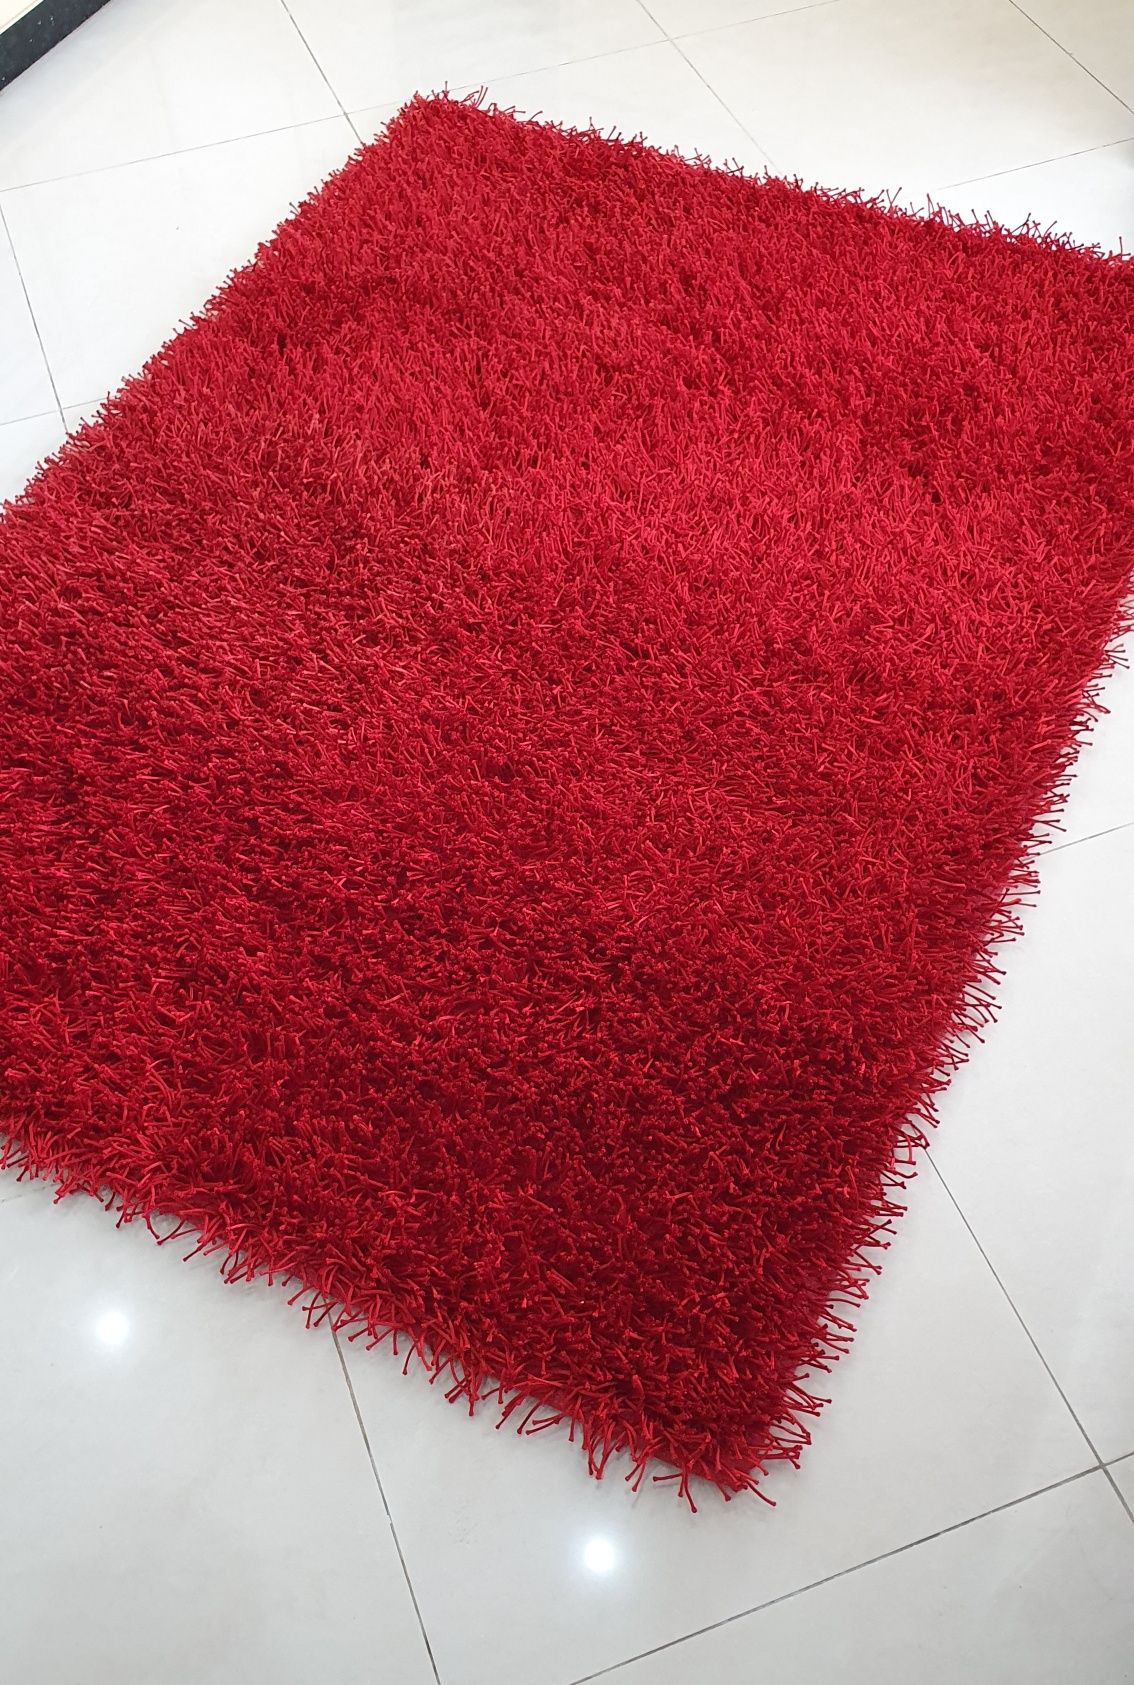 Carpete vermelha